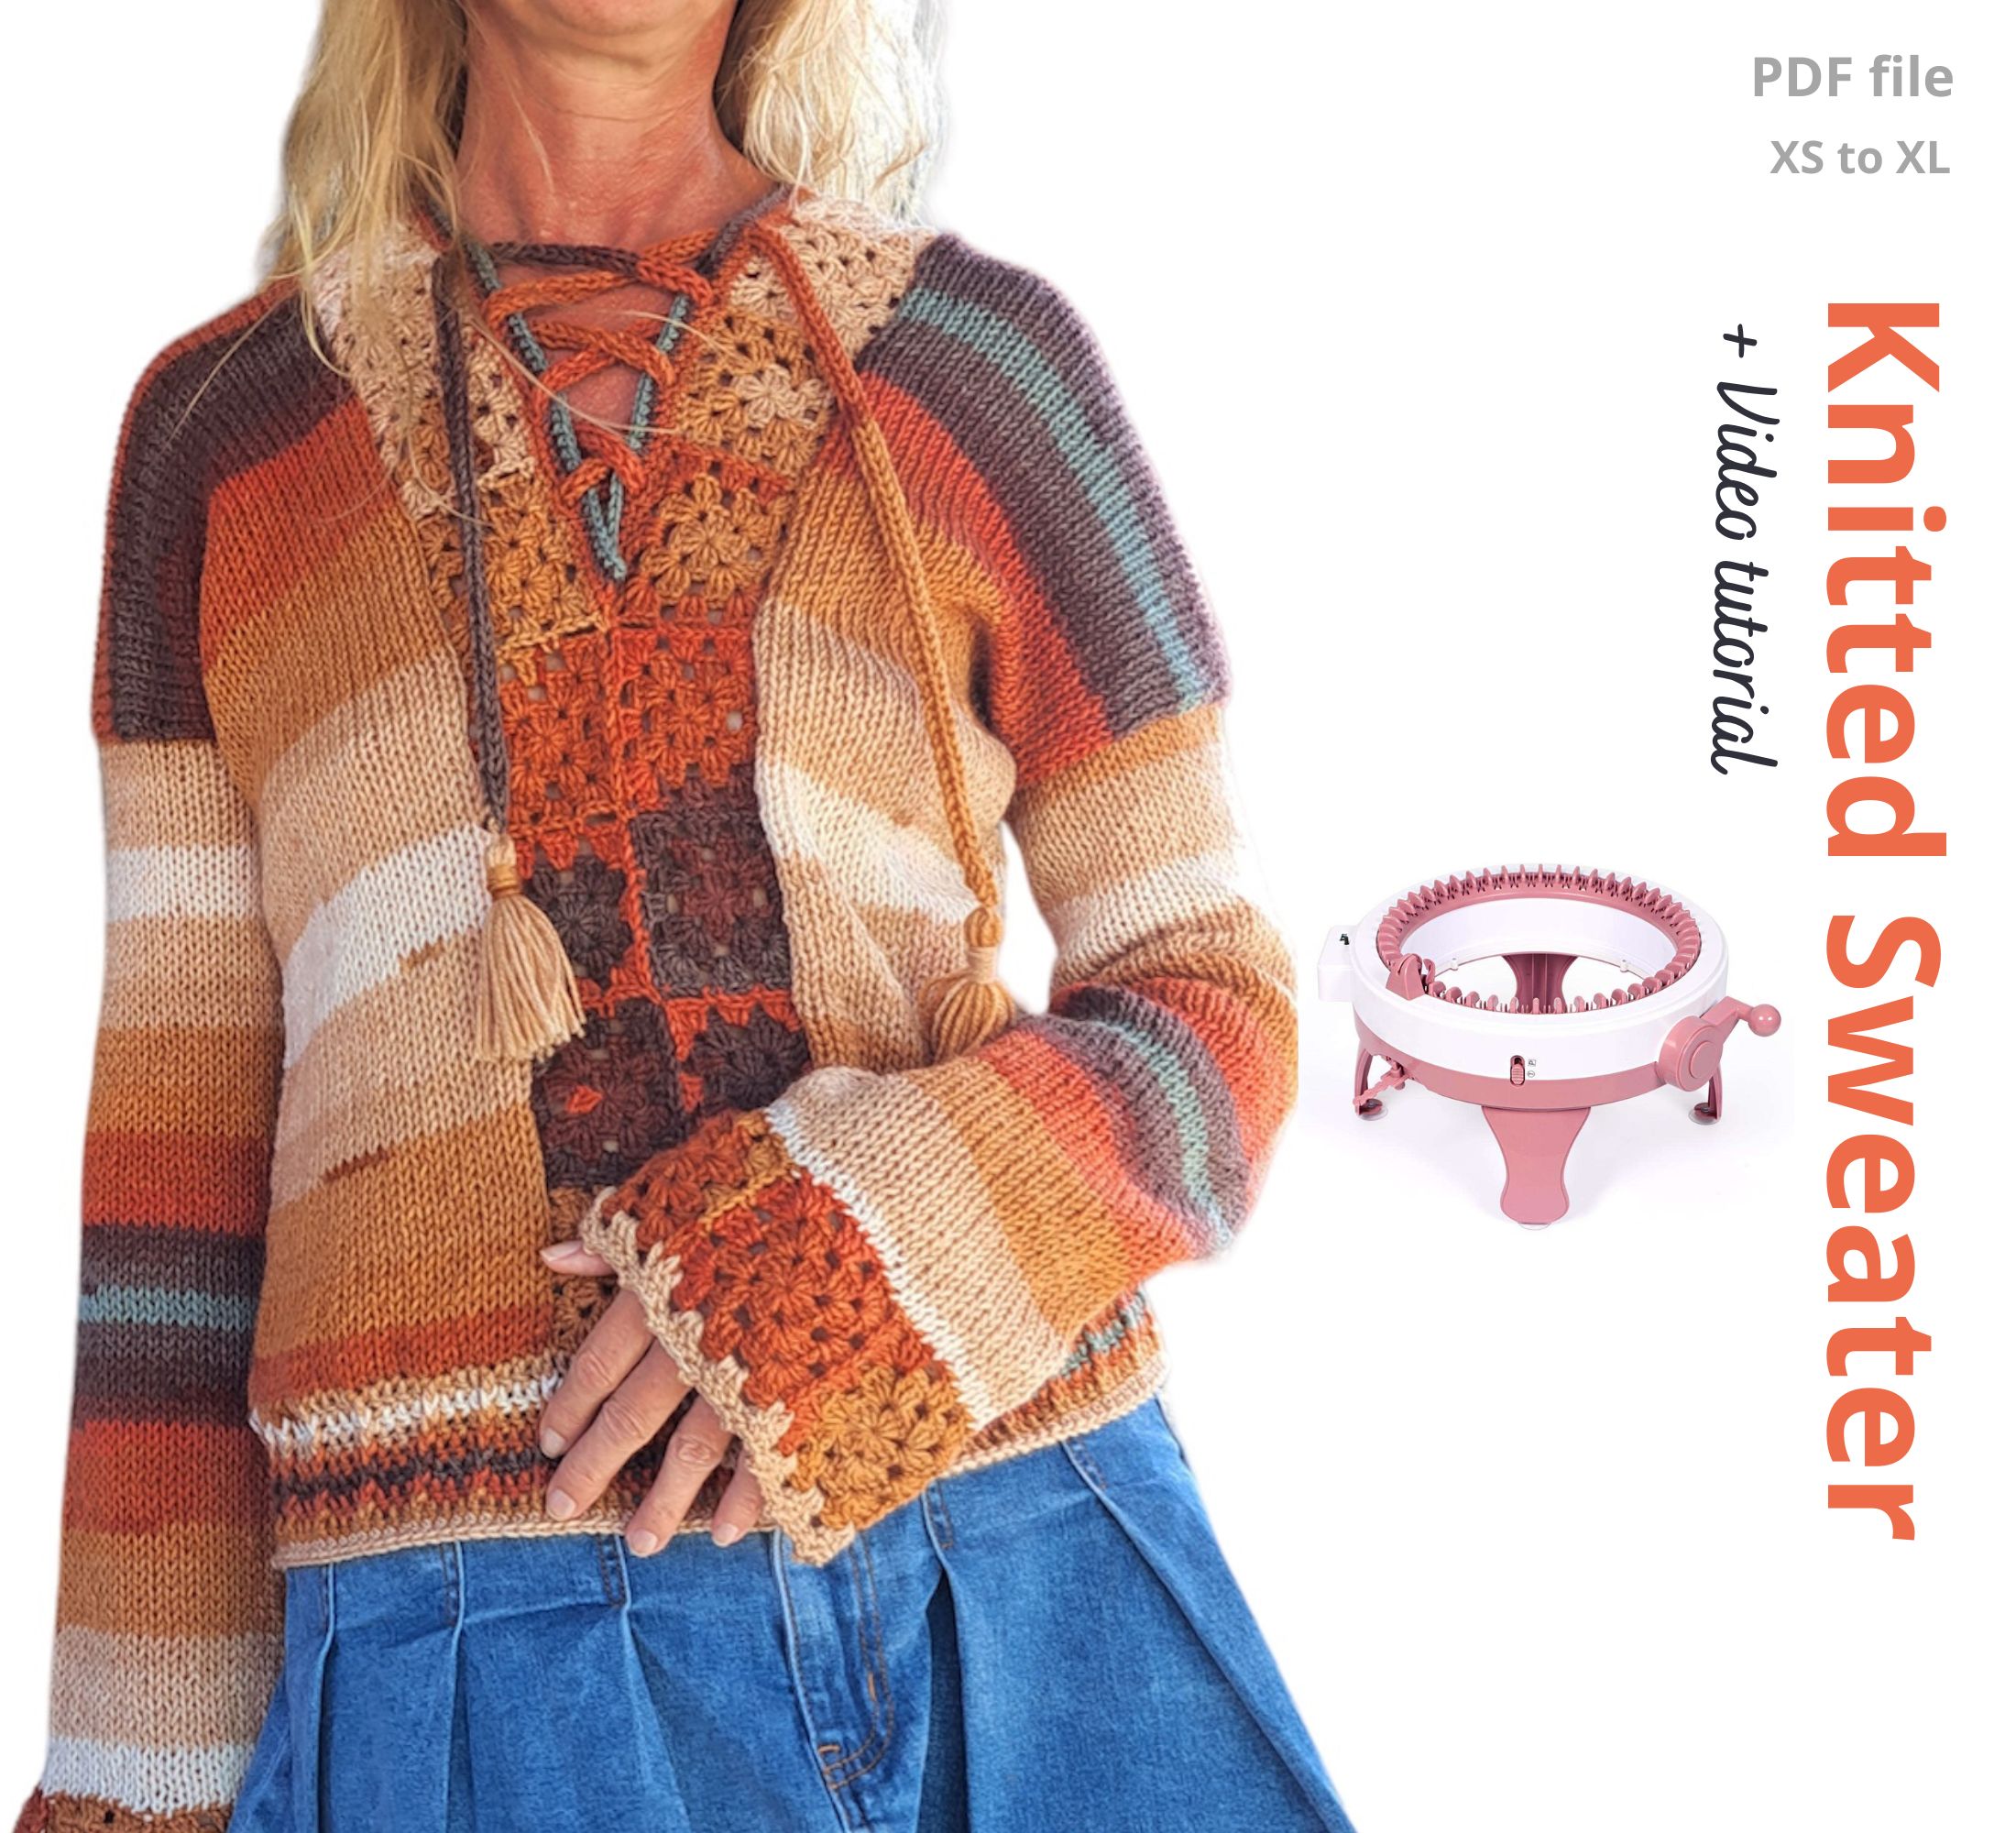 FREE Sentro knitting machine Sweater pattern! - Knitting Machine